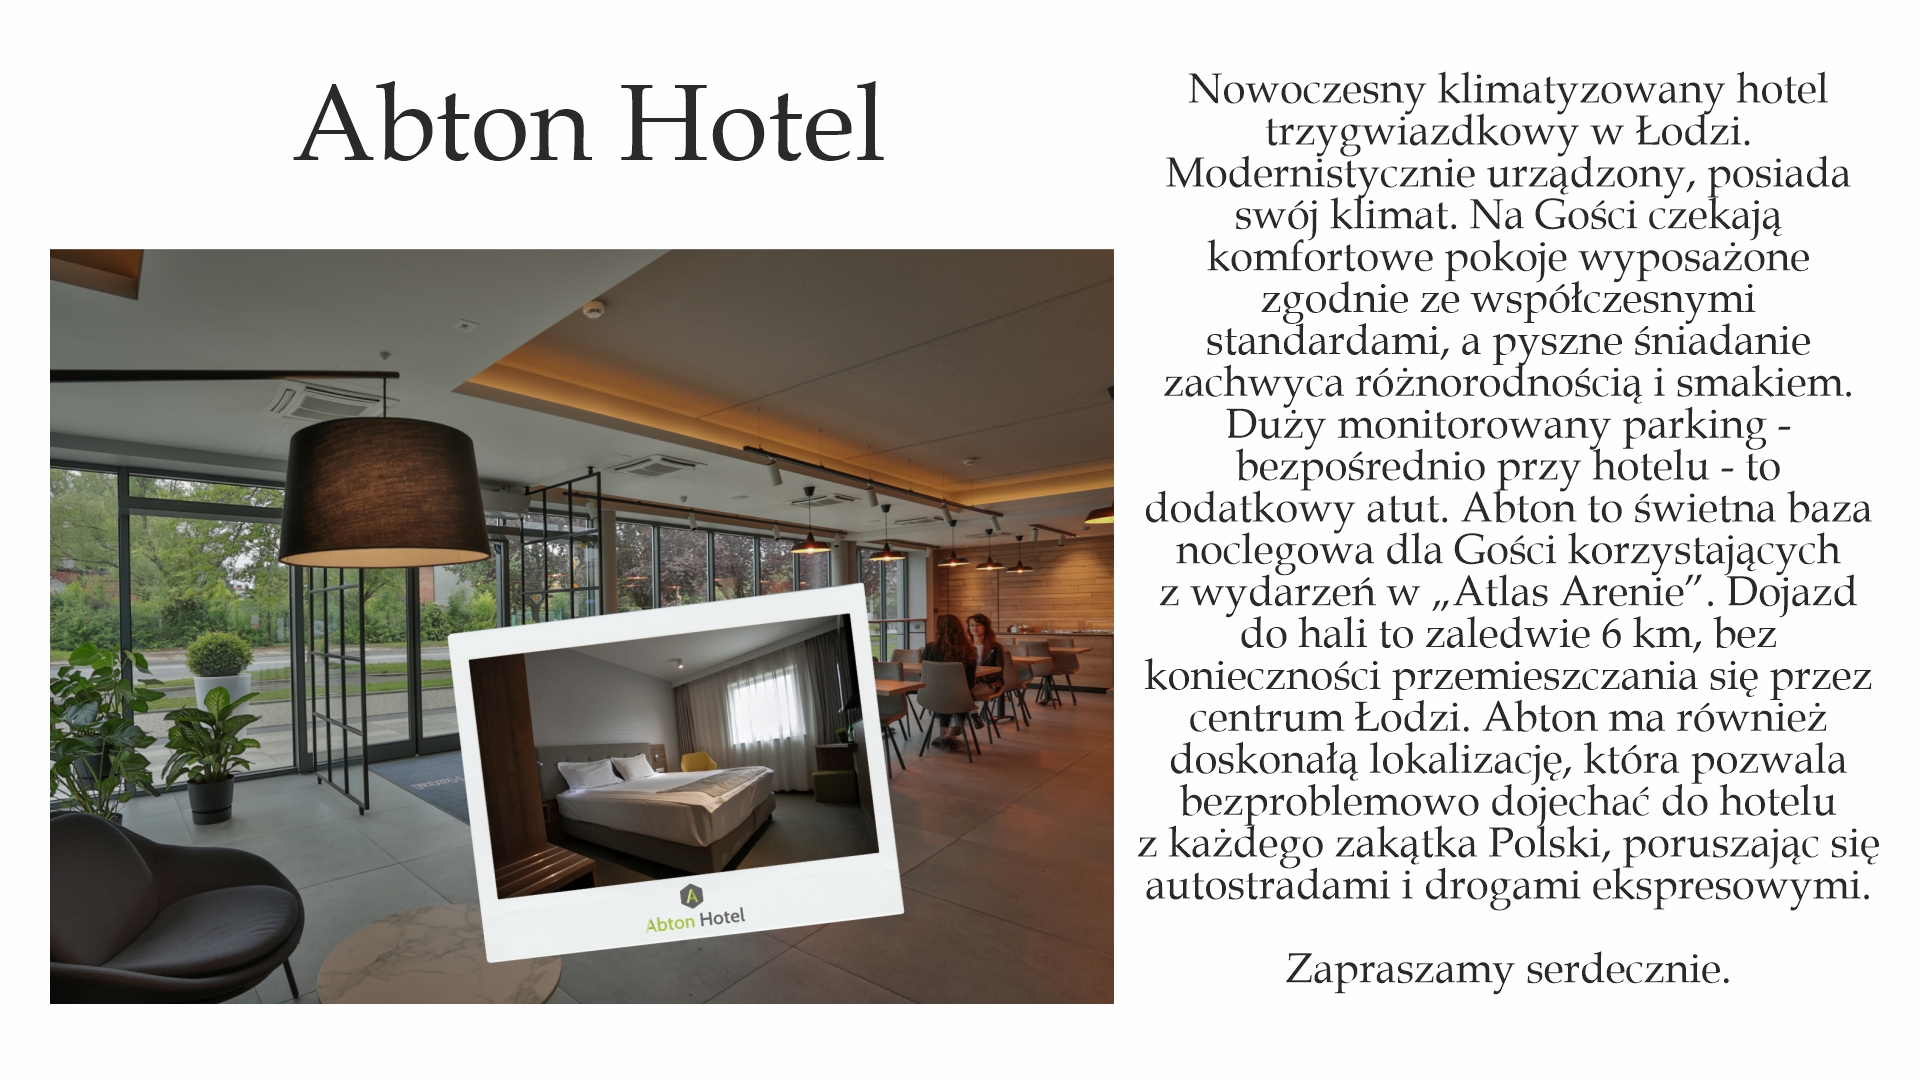 Abton Hotel